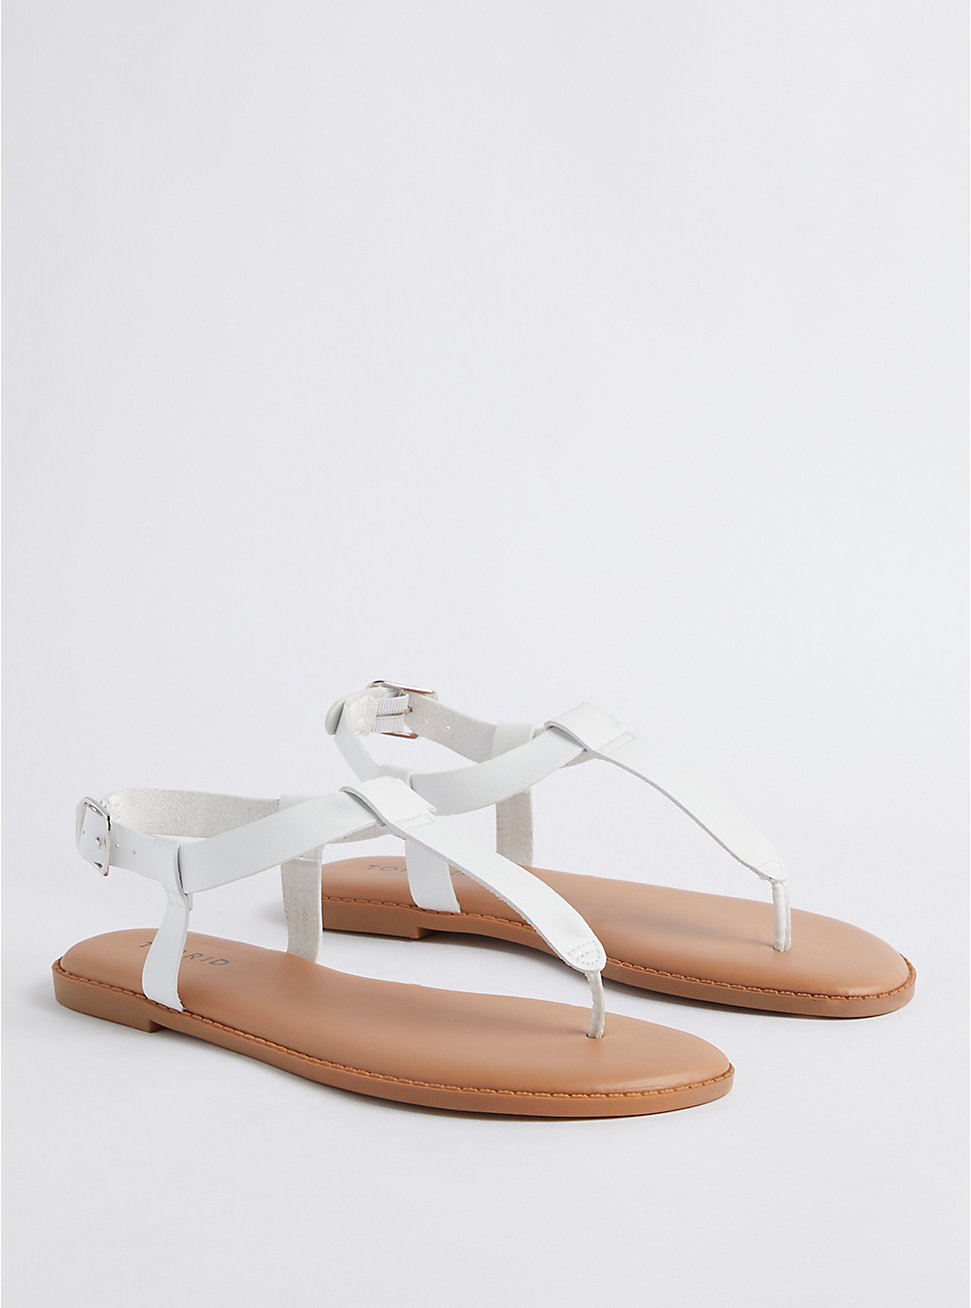 T-Strap Sandal - Faux Leather White (WW), WHITE, hi-res